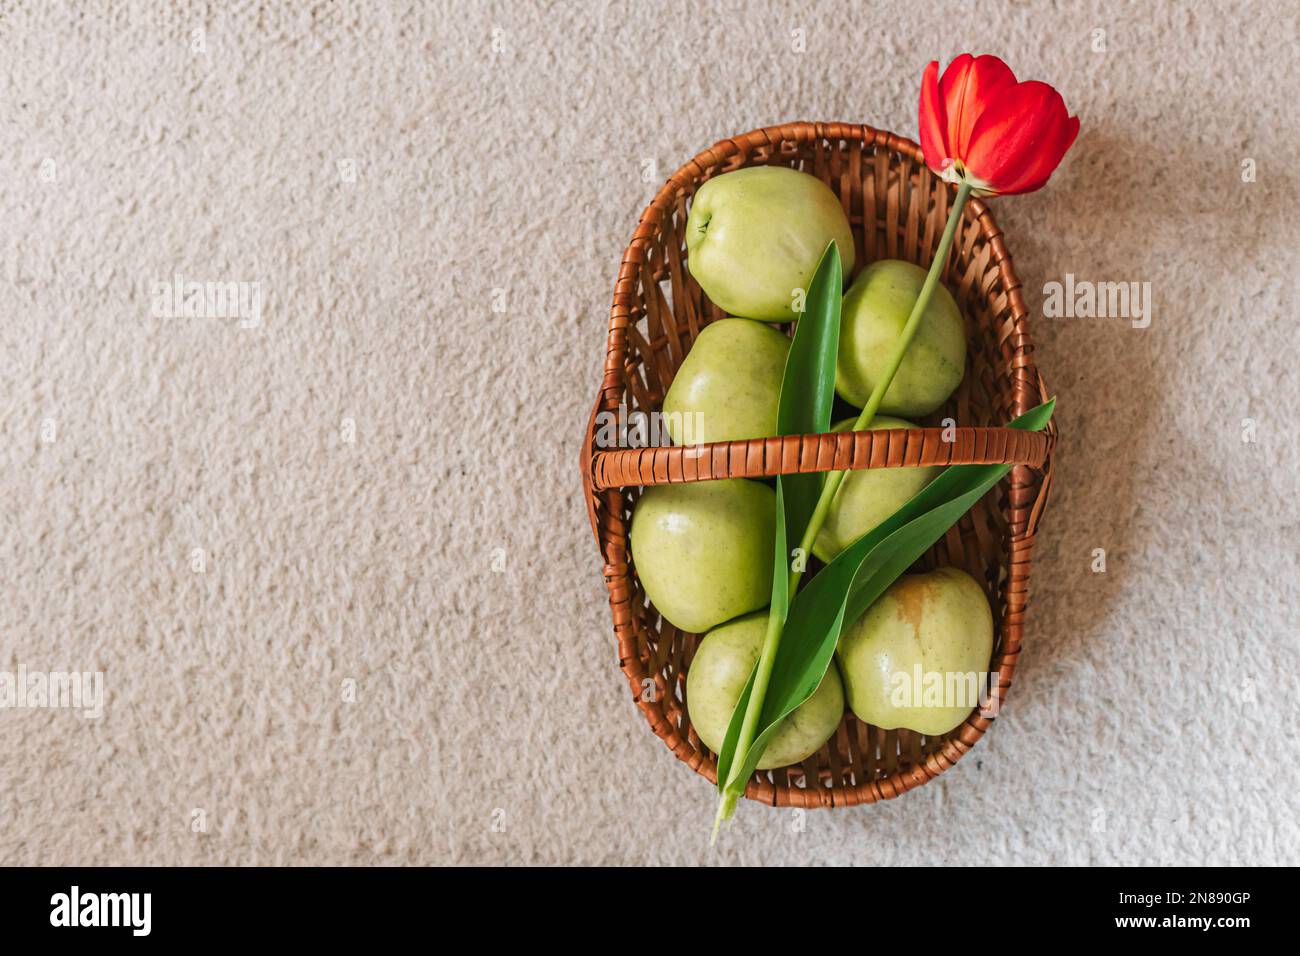 Frische, grüne Äpfel im Korb und eine rote Tulpe. Draufsicht, Frühjahrssymbolik. Speicherplatz kopieren Stockfoto